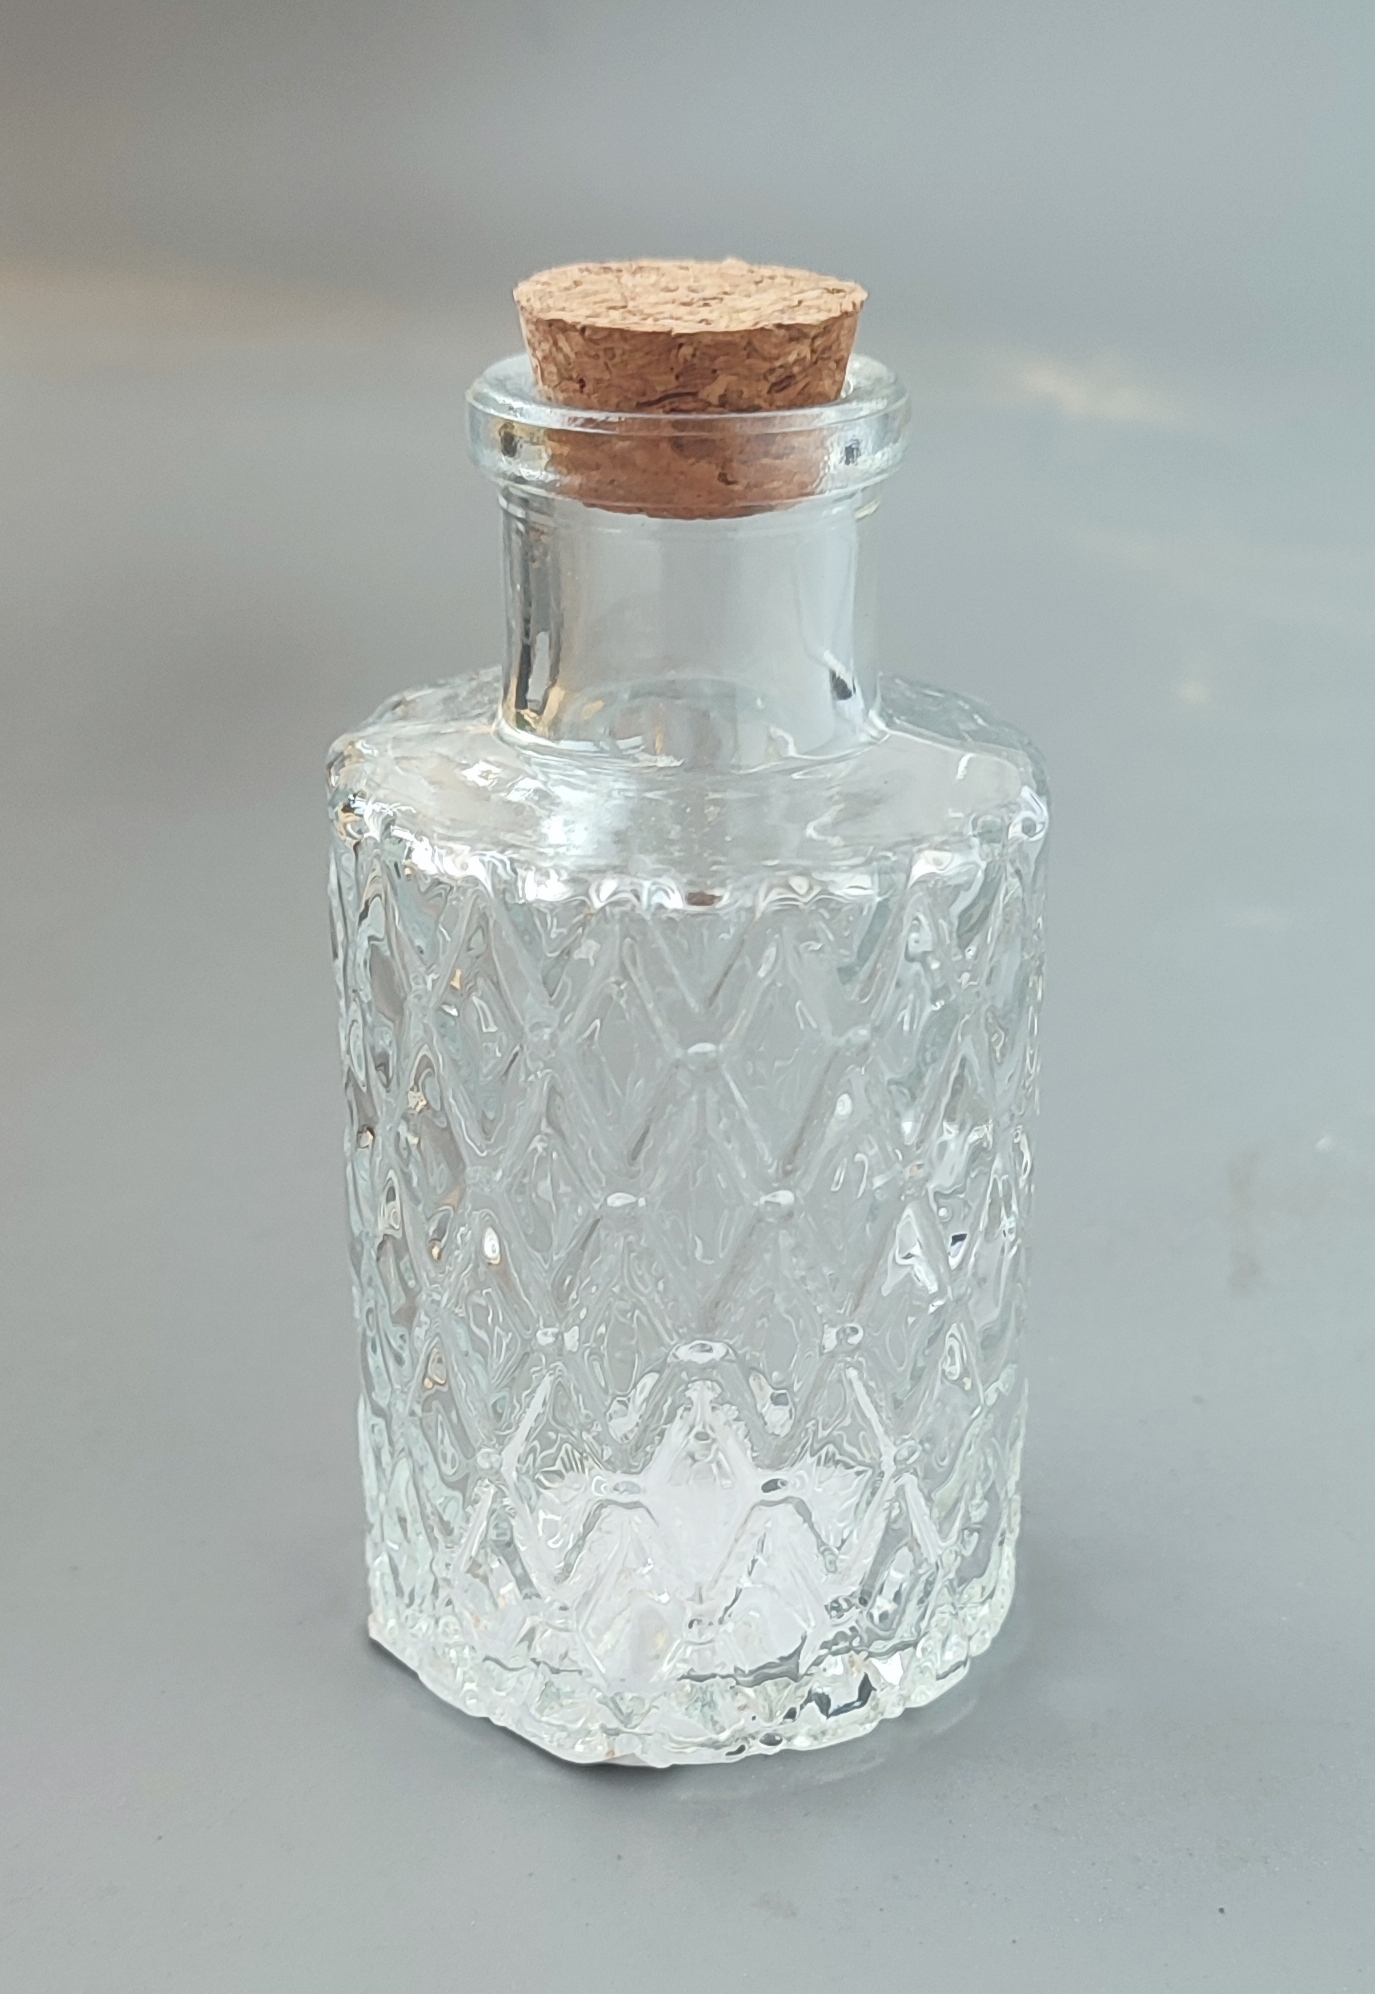 Декор бутылок цветной солью